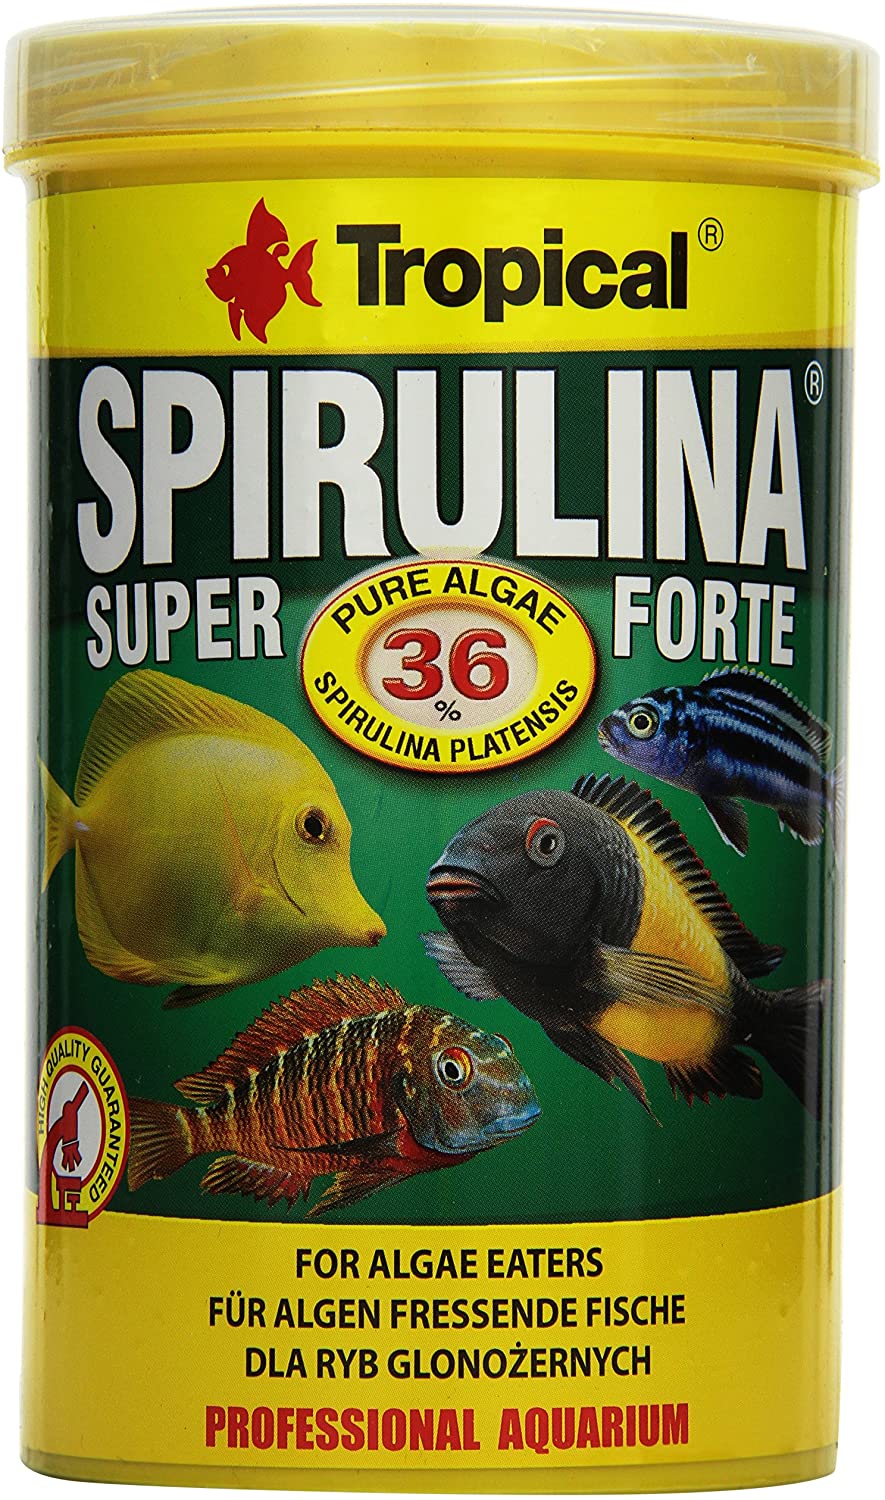  Tropical Super spiru Lina Forte (36%) Copo Forro, 1er Pack (1 x 1 l) 